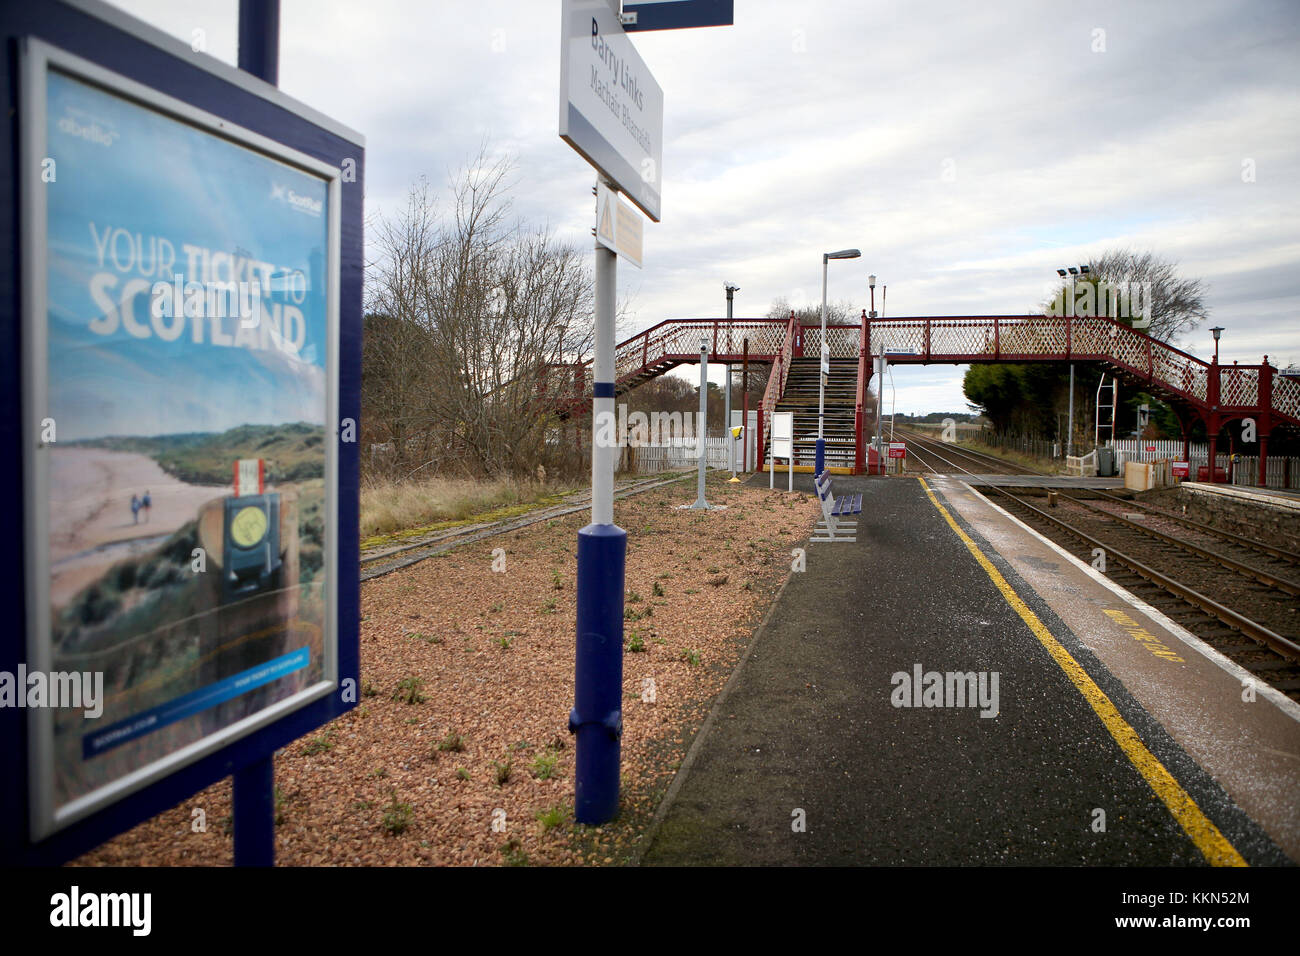 Barry Liens gare près de Carnoustie dans Angus qui a été identifié comme la Grande-Bretagne les moins utilisés station après seulement 24 passagers ont voyagé vers ou à partir de la station en 2016/17, selon les données publiées par le Bureau du rail et de la route. Banque D'Images